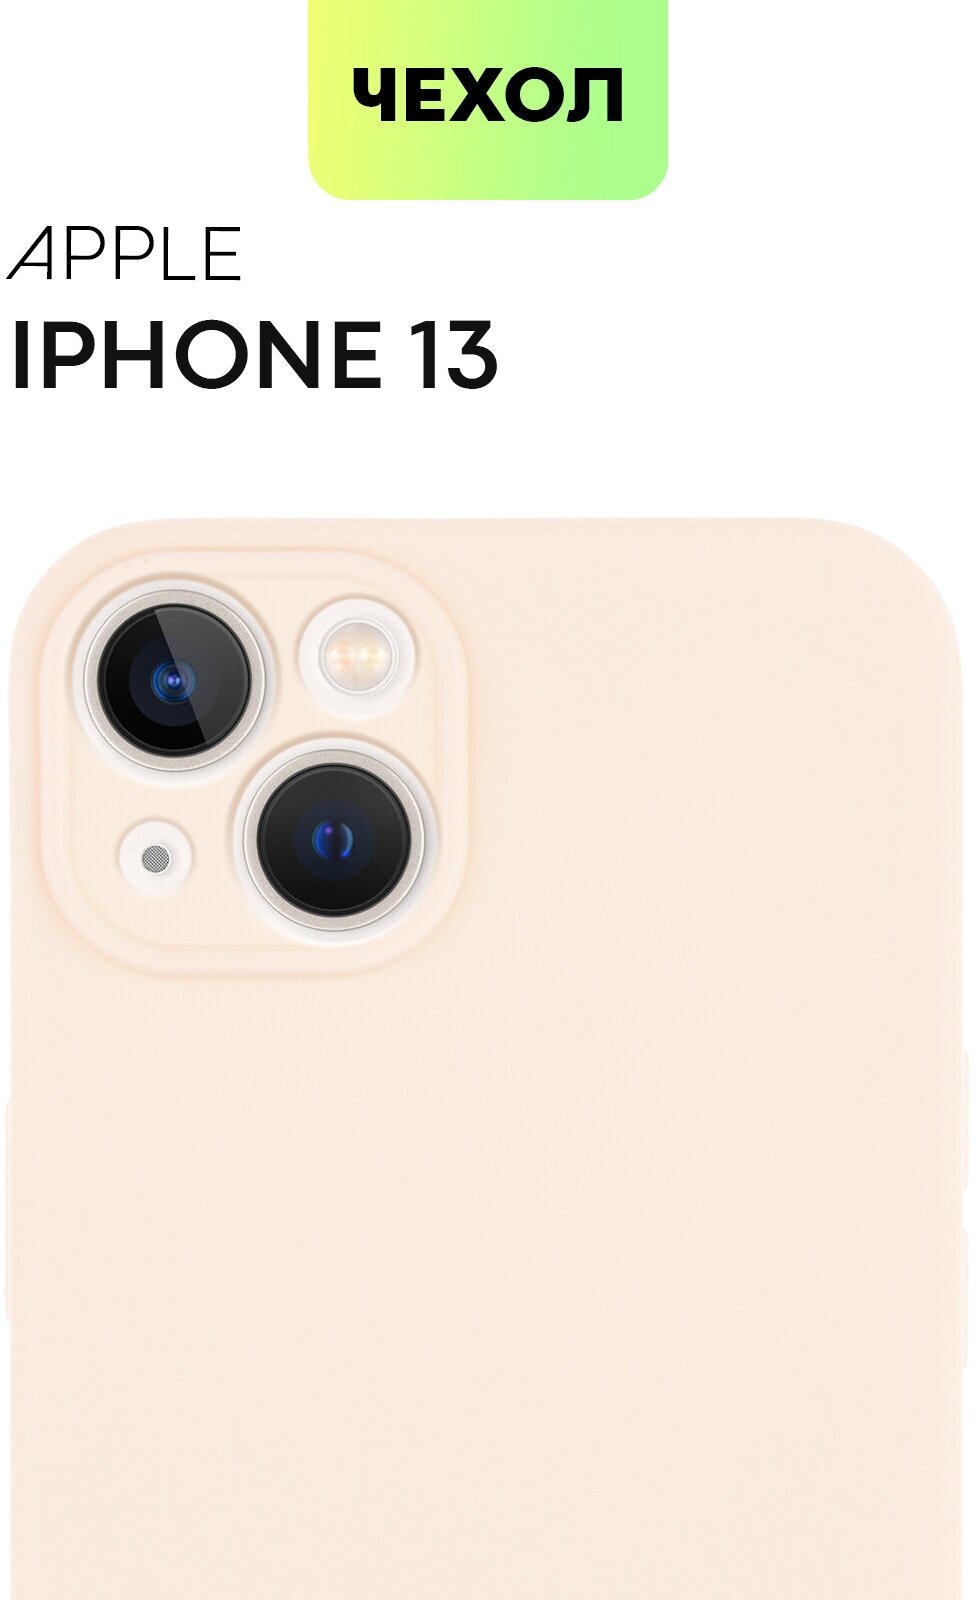 Чехол BROSCORP для Apple iPhone 13 (Айфон 13), тонкая полимерная с матовым покрытием, бортик (защита) вокруг модуля камер, нежно-розовая